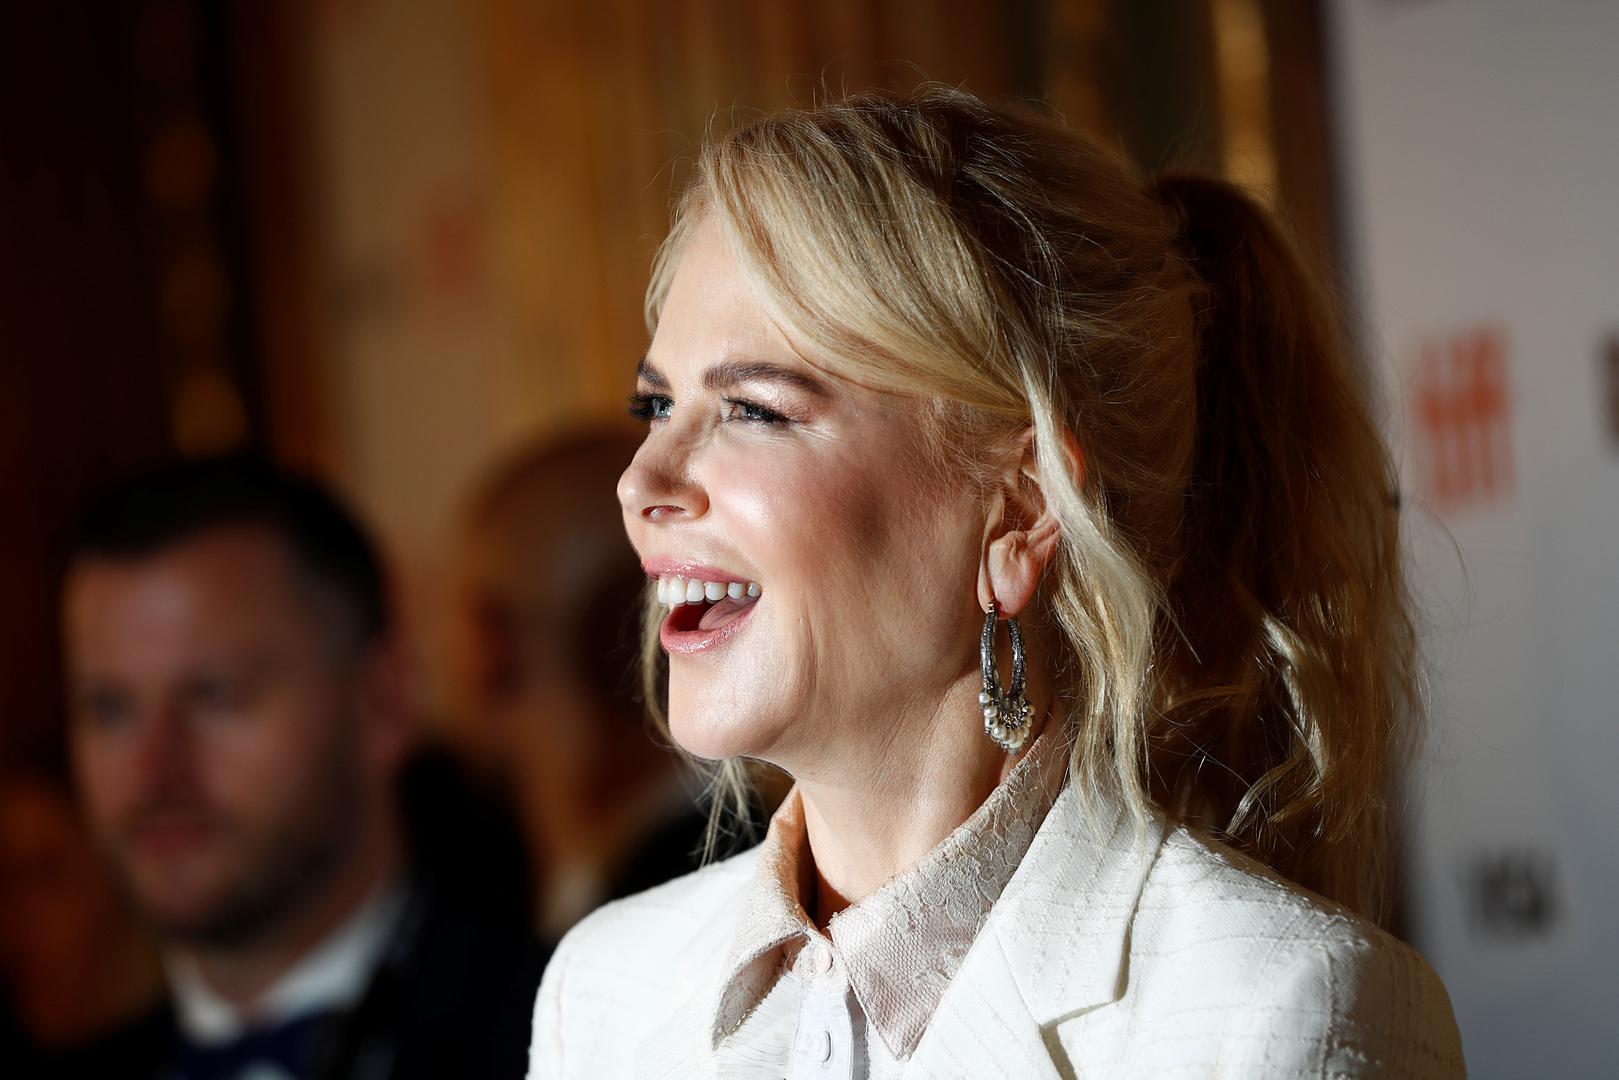 Nicole Kidman zajedno s ostatkom ekipe filma "Destroyer" predstavila je film na filmskom festivalu u Torontu.